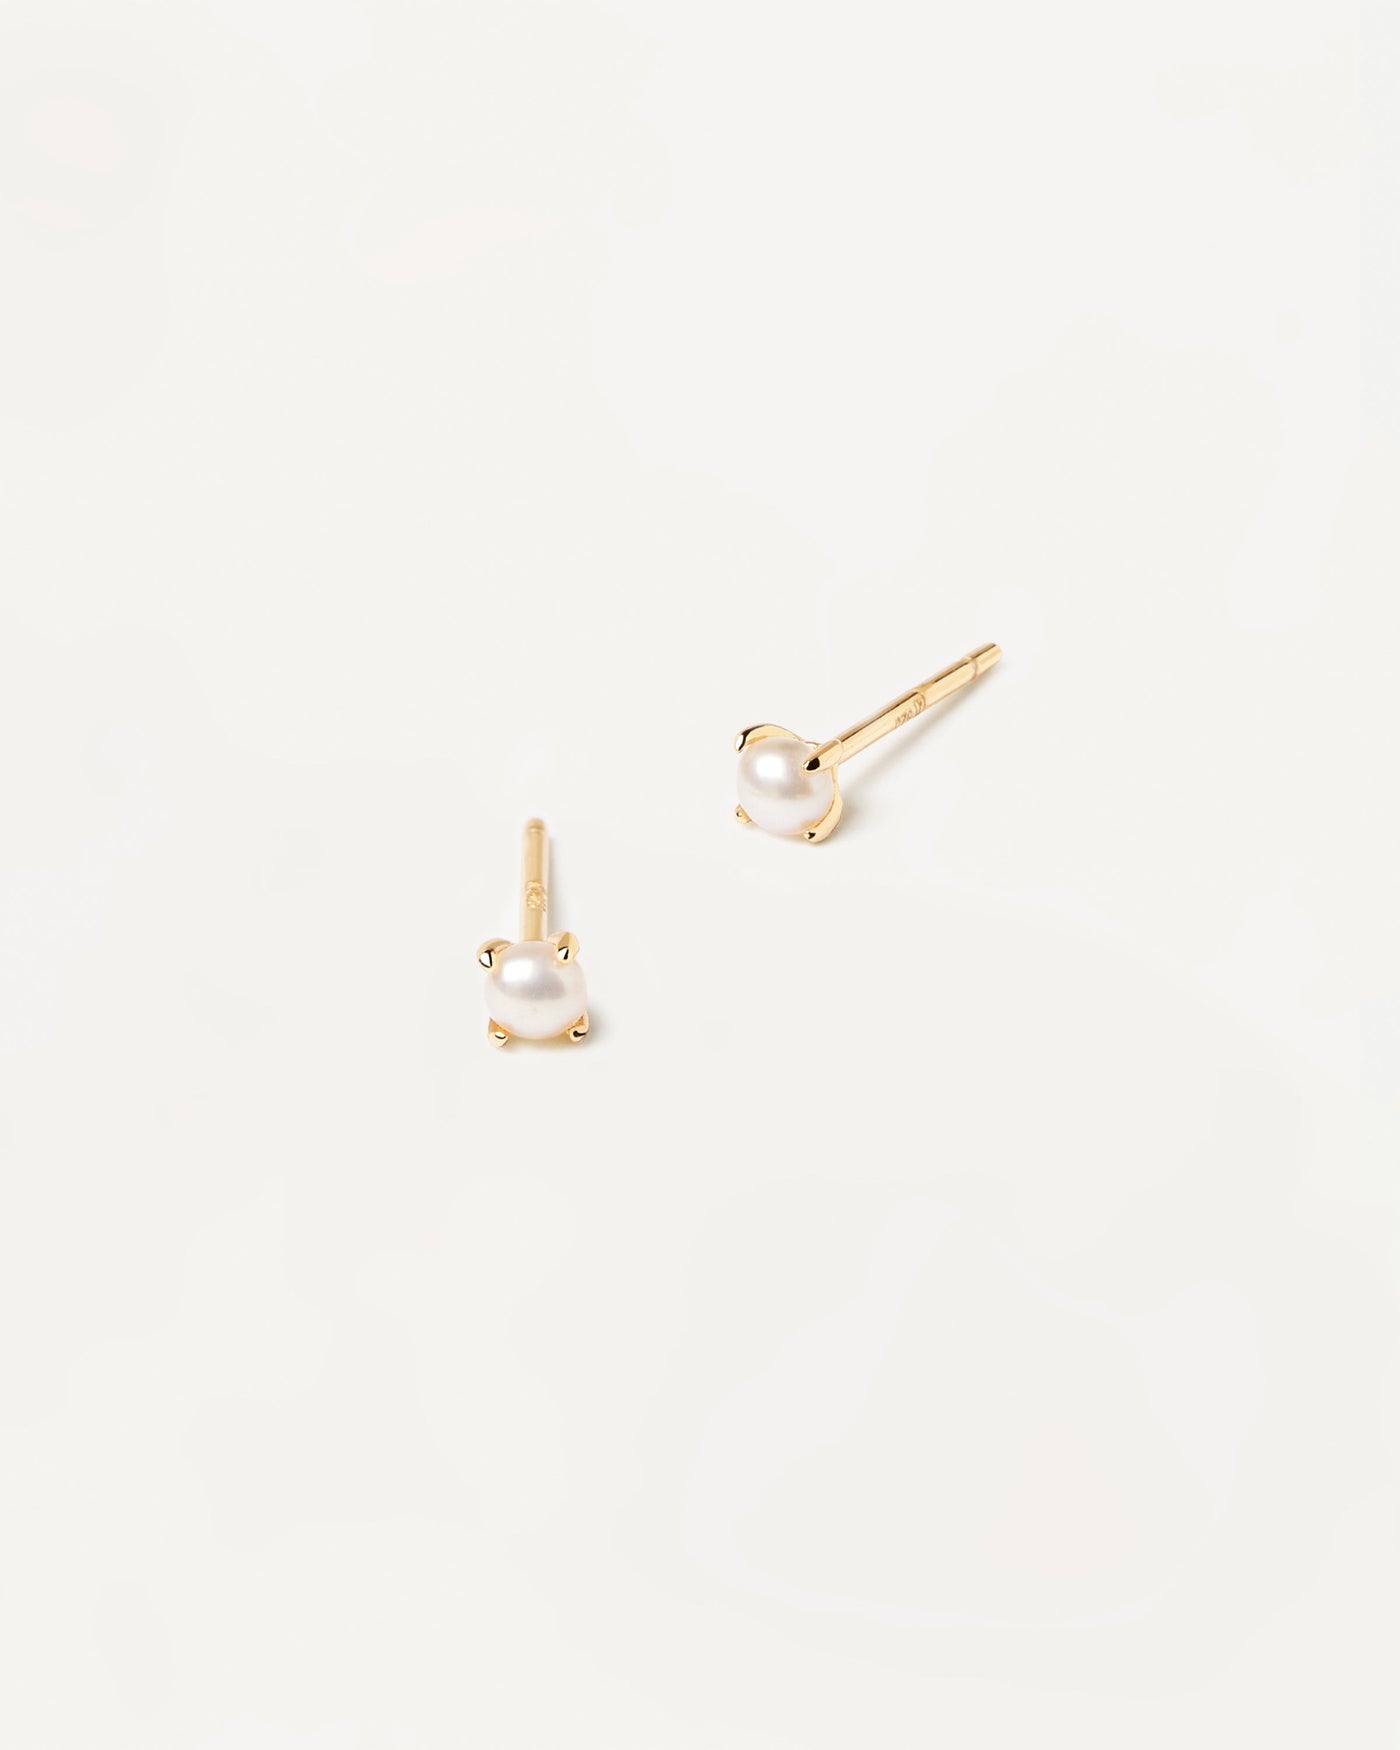 Solitary Mini Pearl Ohrringe. paar ohrringe aus 18k vergoldetem 925er sterlingsilber mit kleiner naturperle angefasst. Erhalten Sie die neuesten Produkte von PDPAOLA. Geben Sie Ihre Bestellung sicher auf und erhalten Sie diesen Bestseller.